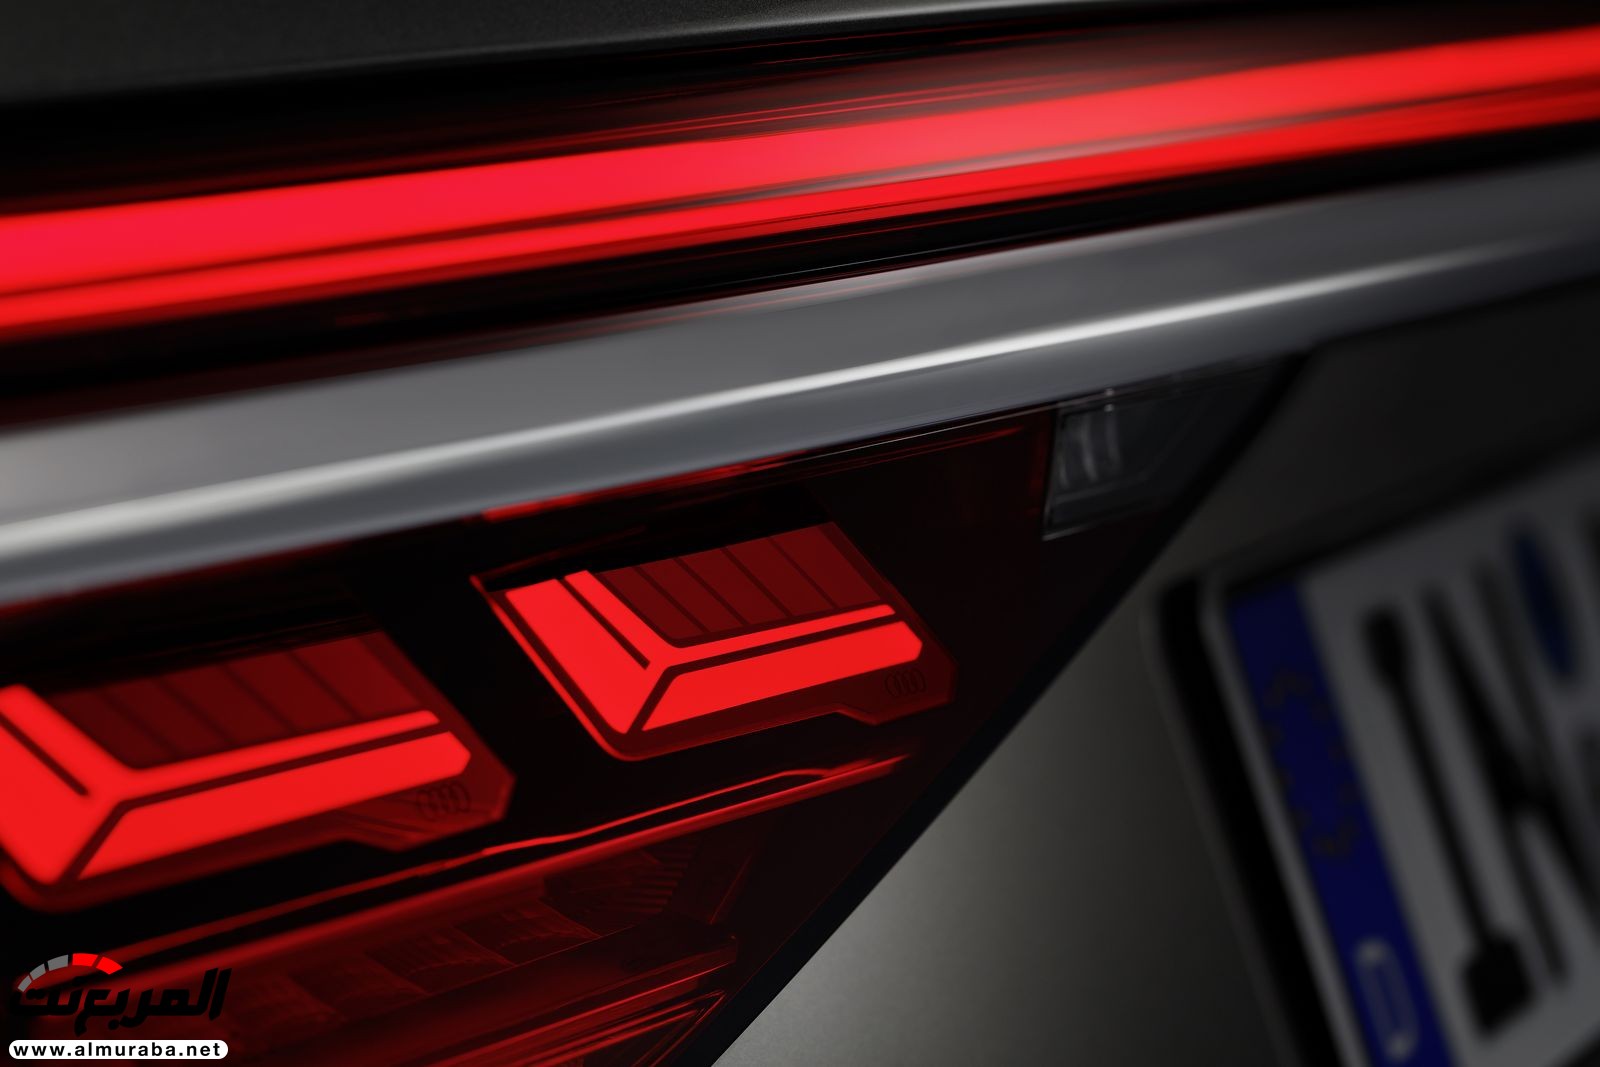 أودي A8 2018 الجديدة كلياً تكشف نفسها بتصميم وتقنيات متطورة "معلومات + 100 صورة" Audi A8 40